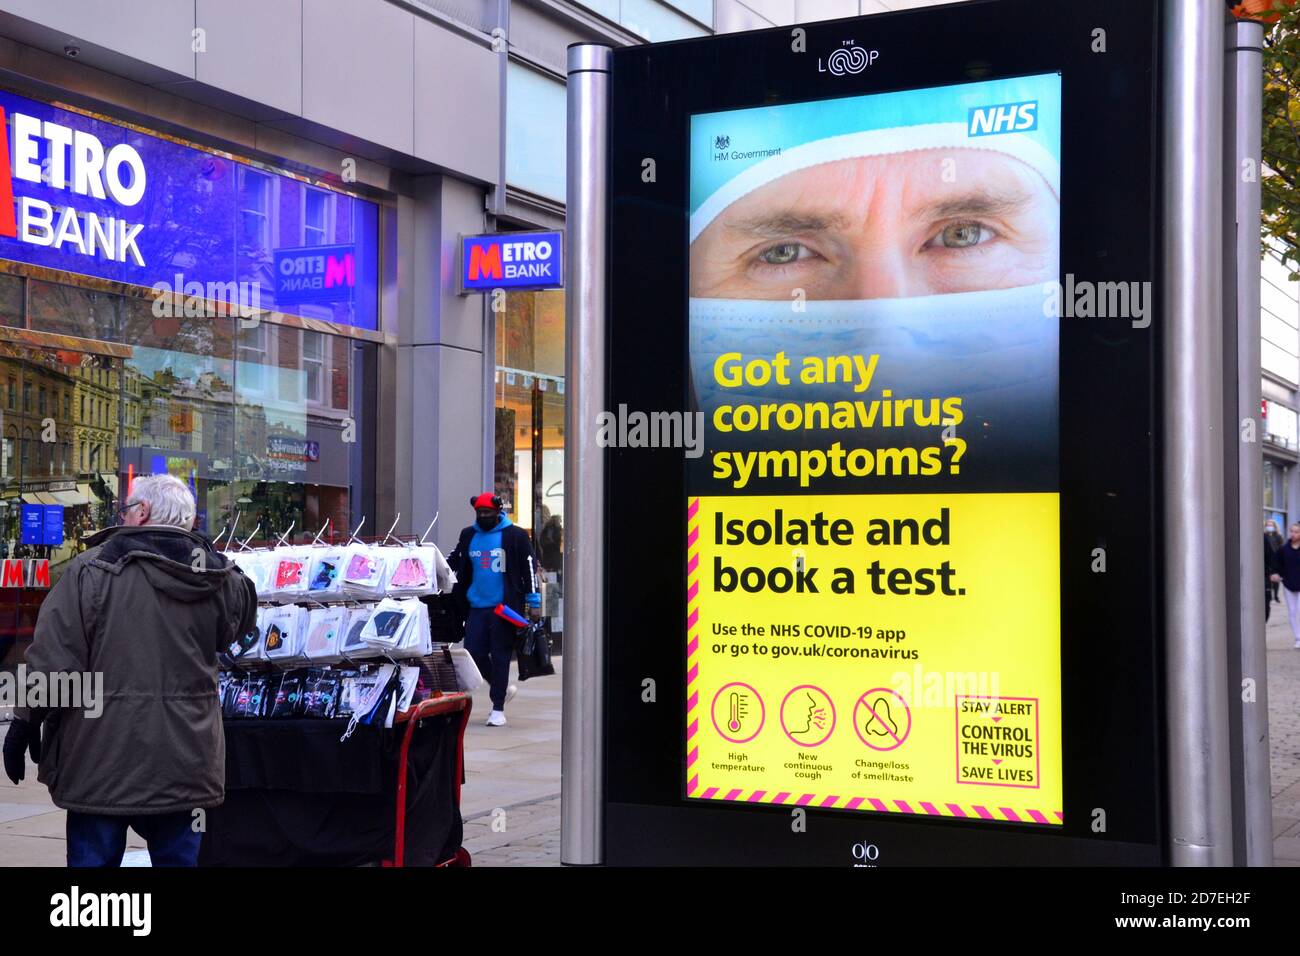 Covid 19 o señalización y publicidad de coronavirus en Manchester, Gran Manchester, Inglaterra, Reino Unido. Un signo iluminado de NHS insta a las personas a hacerse una prueba si tienen síntomas del virus. Foto de stock